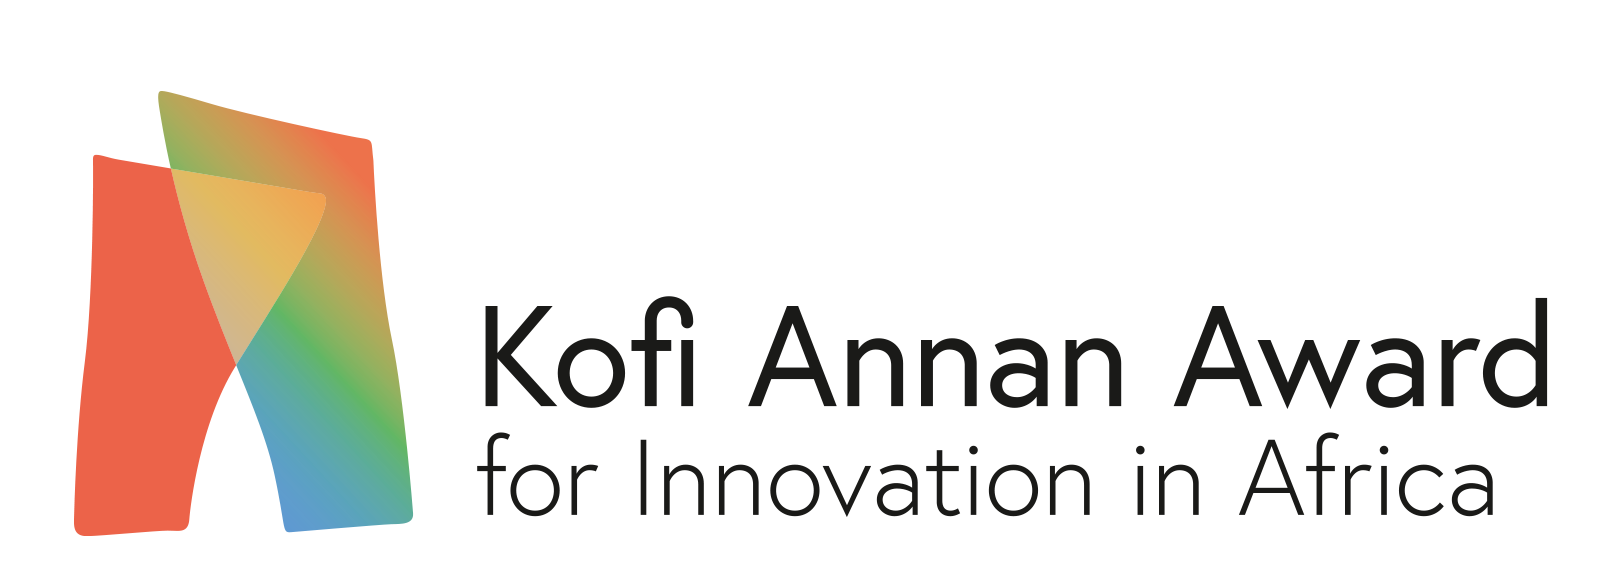 Kofi Annan Award for Innovation in Africa logo